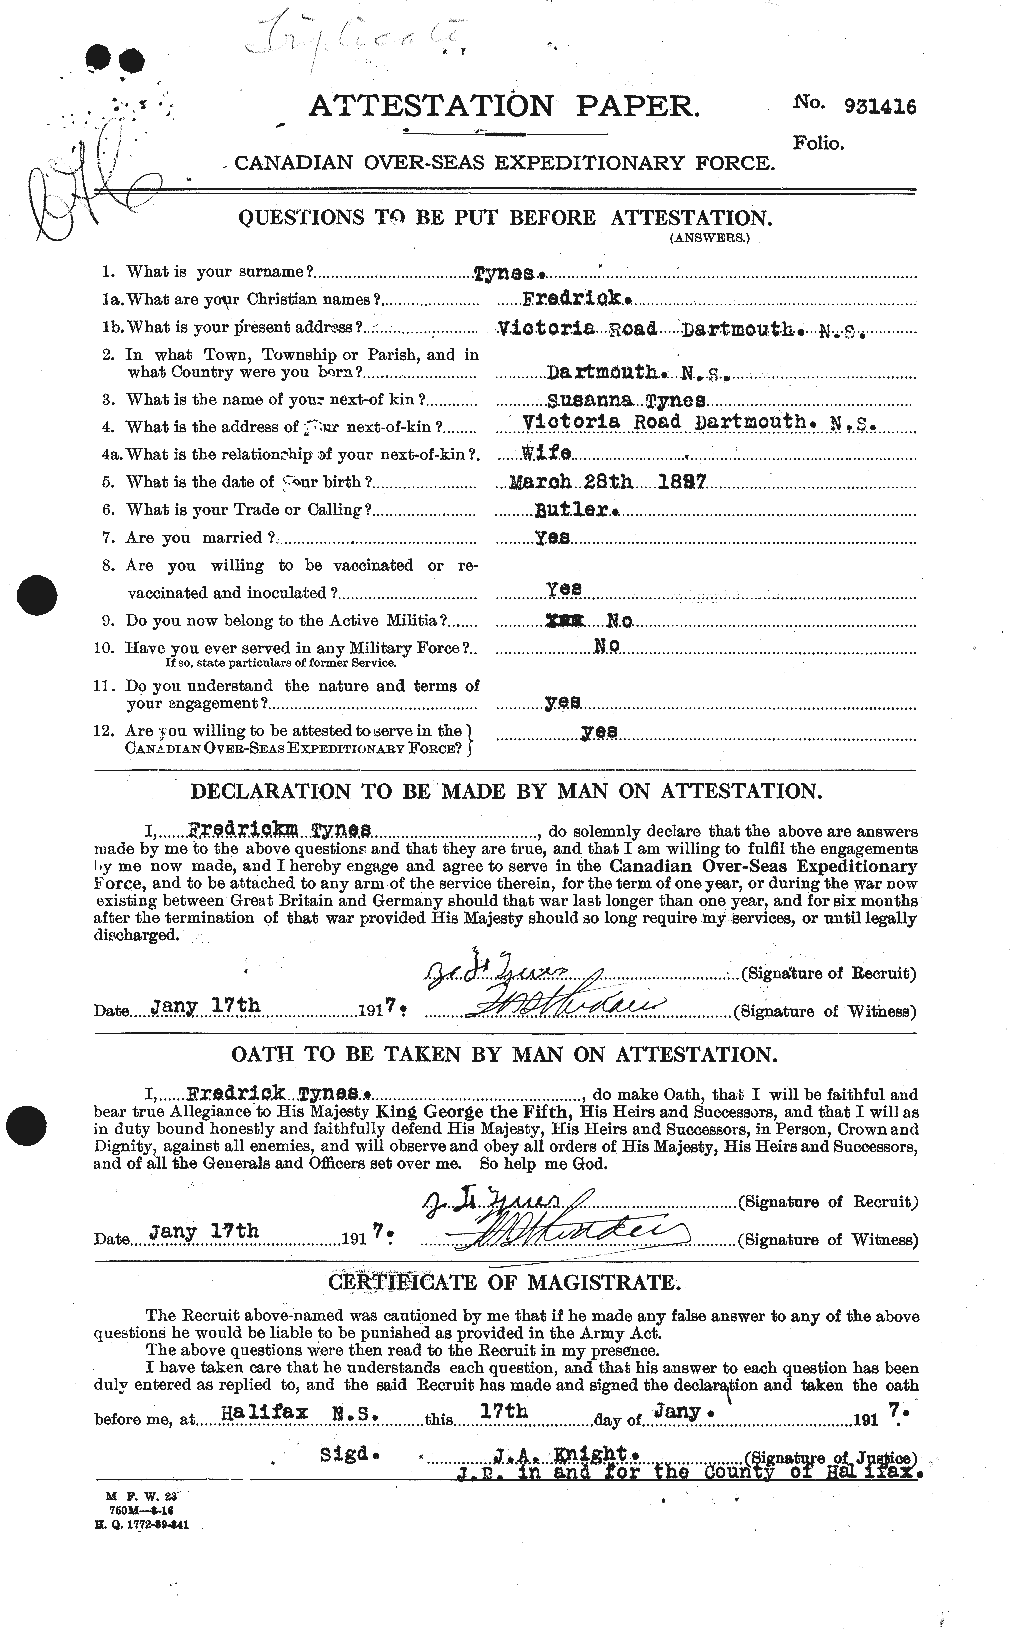 Dossiers du Personnel de la Première Guerre mondiale - CEC 644537a